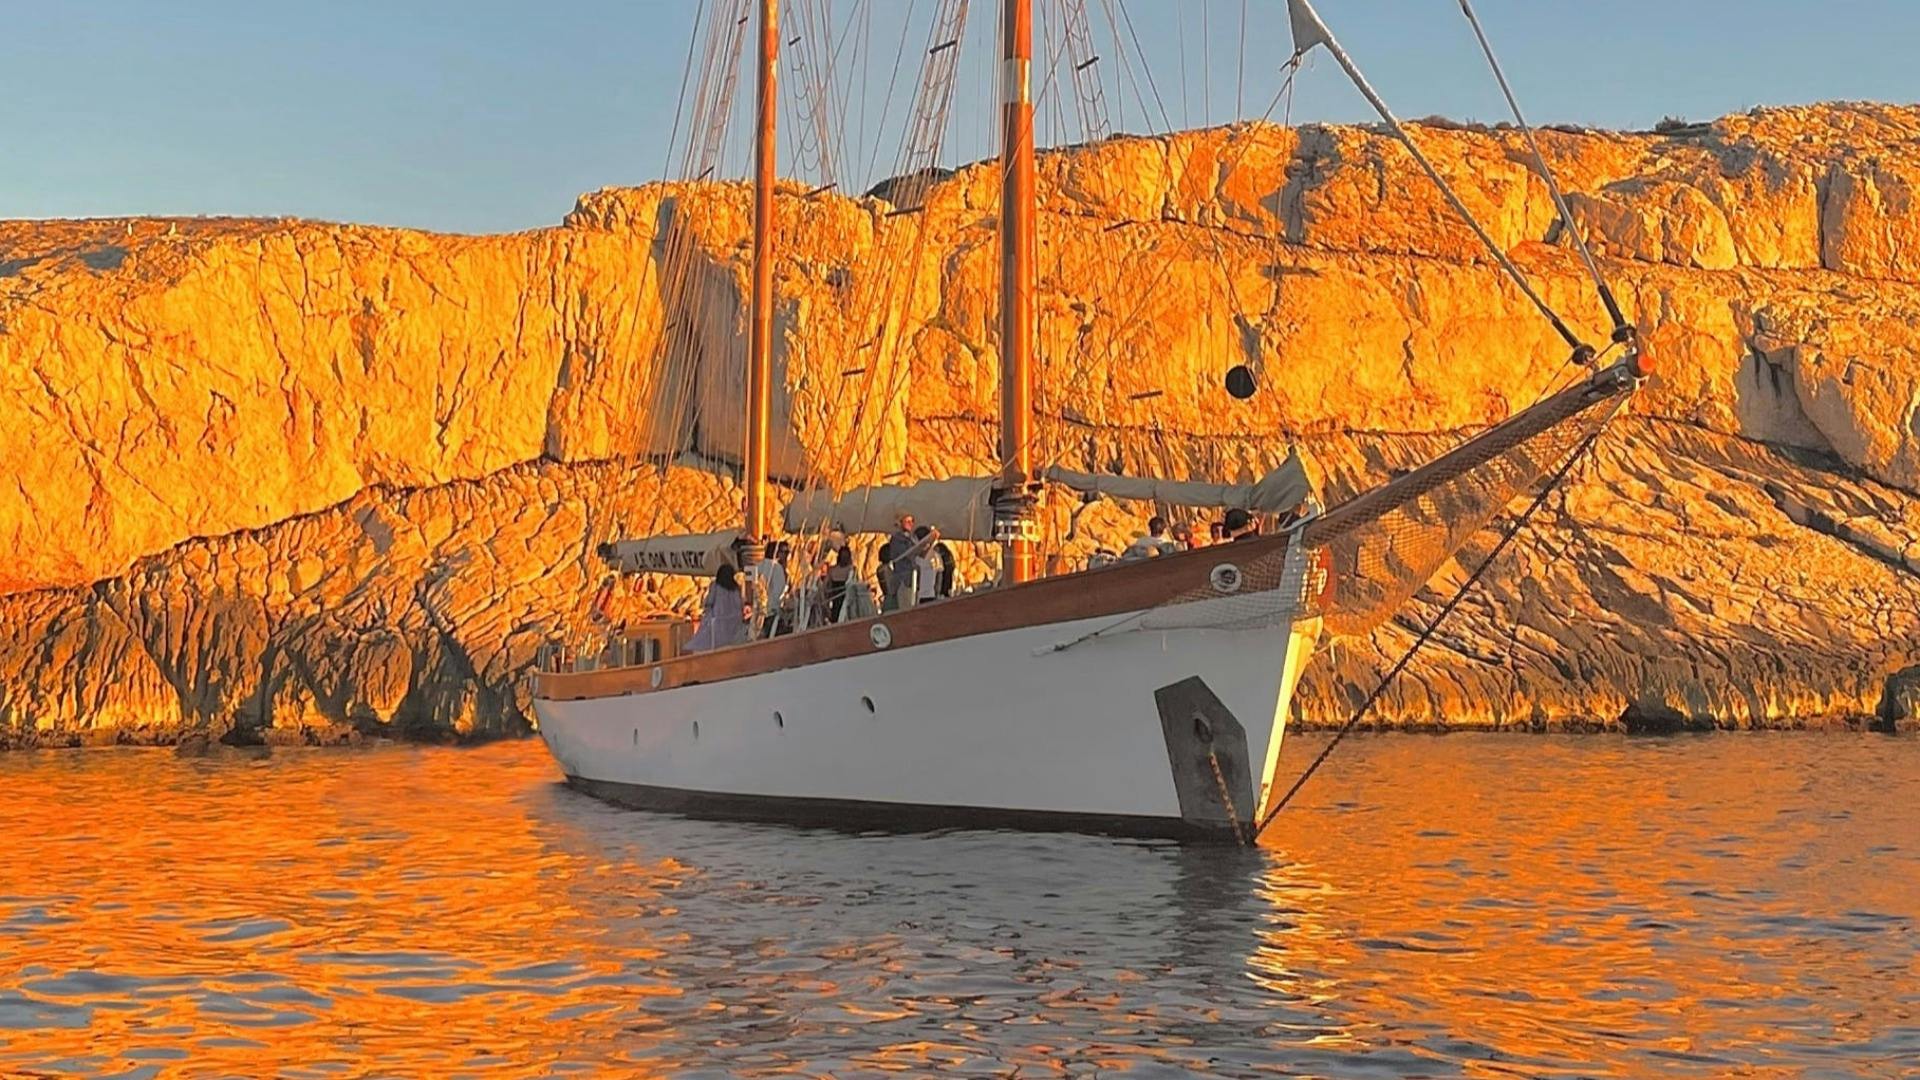 Sunset Frioul Islands Cruise auf einem klassischen Ketschboot